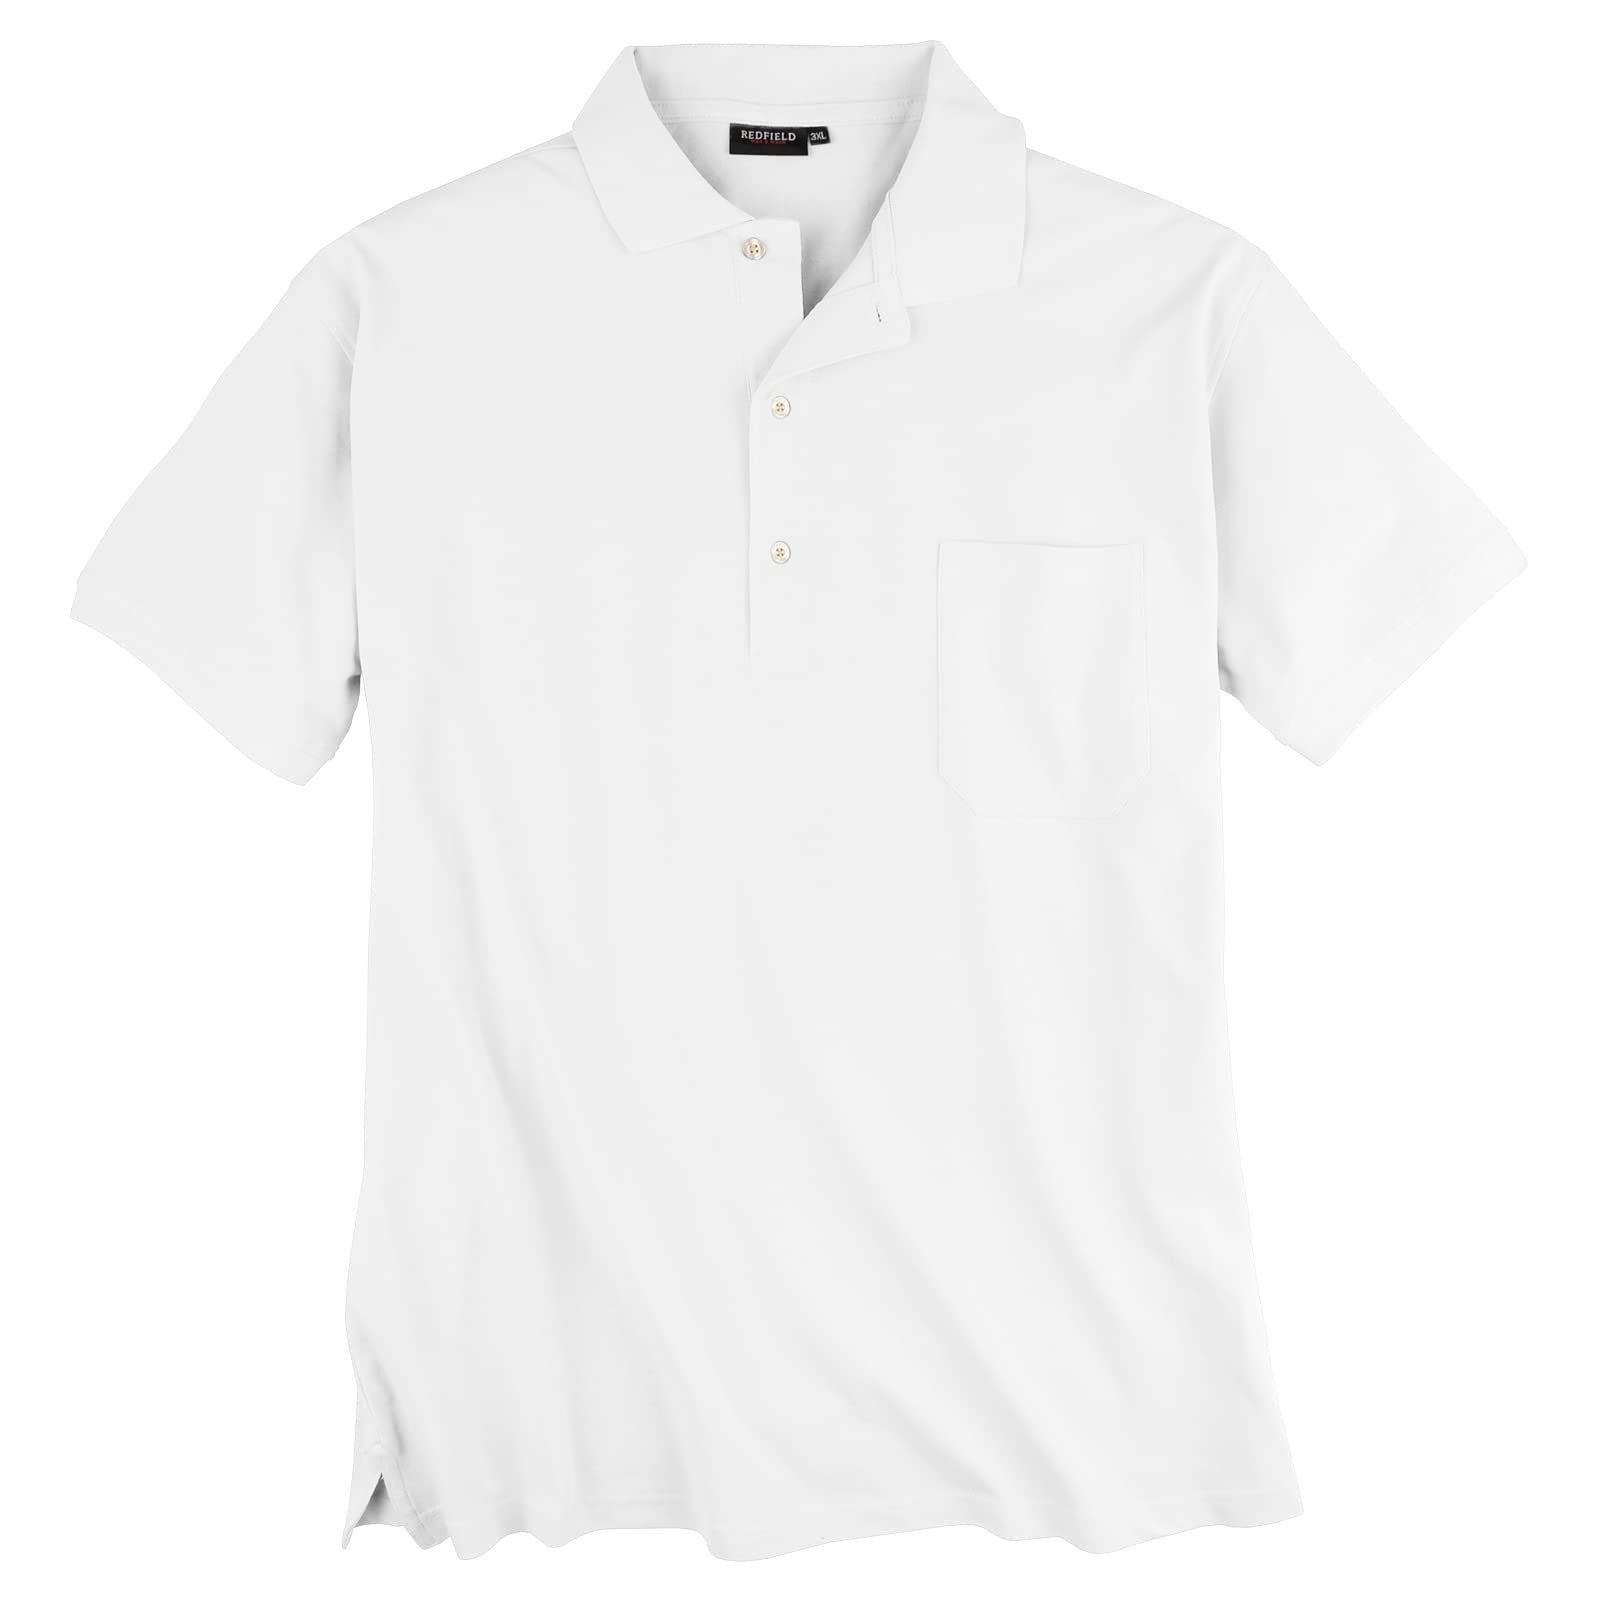 Redfield Poloshirt Pique Übergröße weiß, XL Größe:4XL